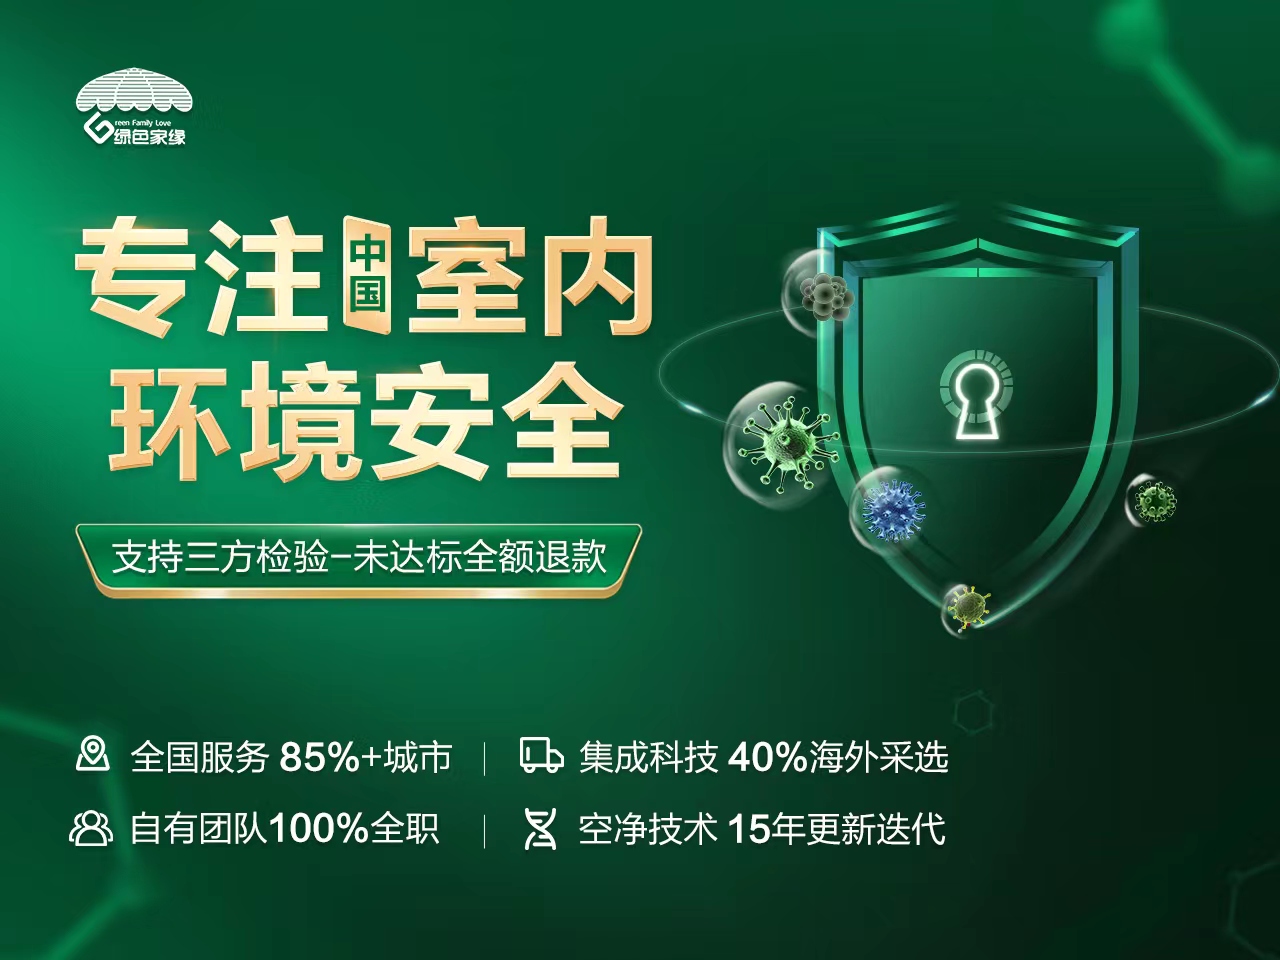 南京绿色家缘除甲醛公司用科技守护呼吸安全